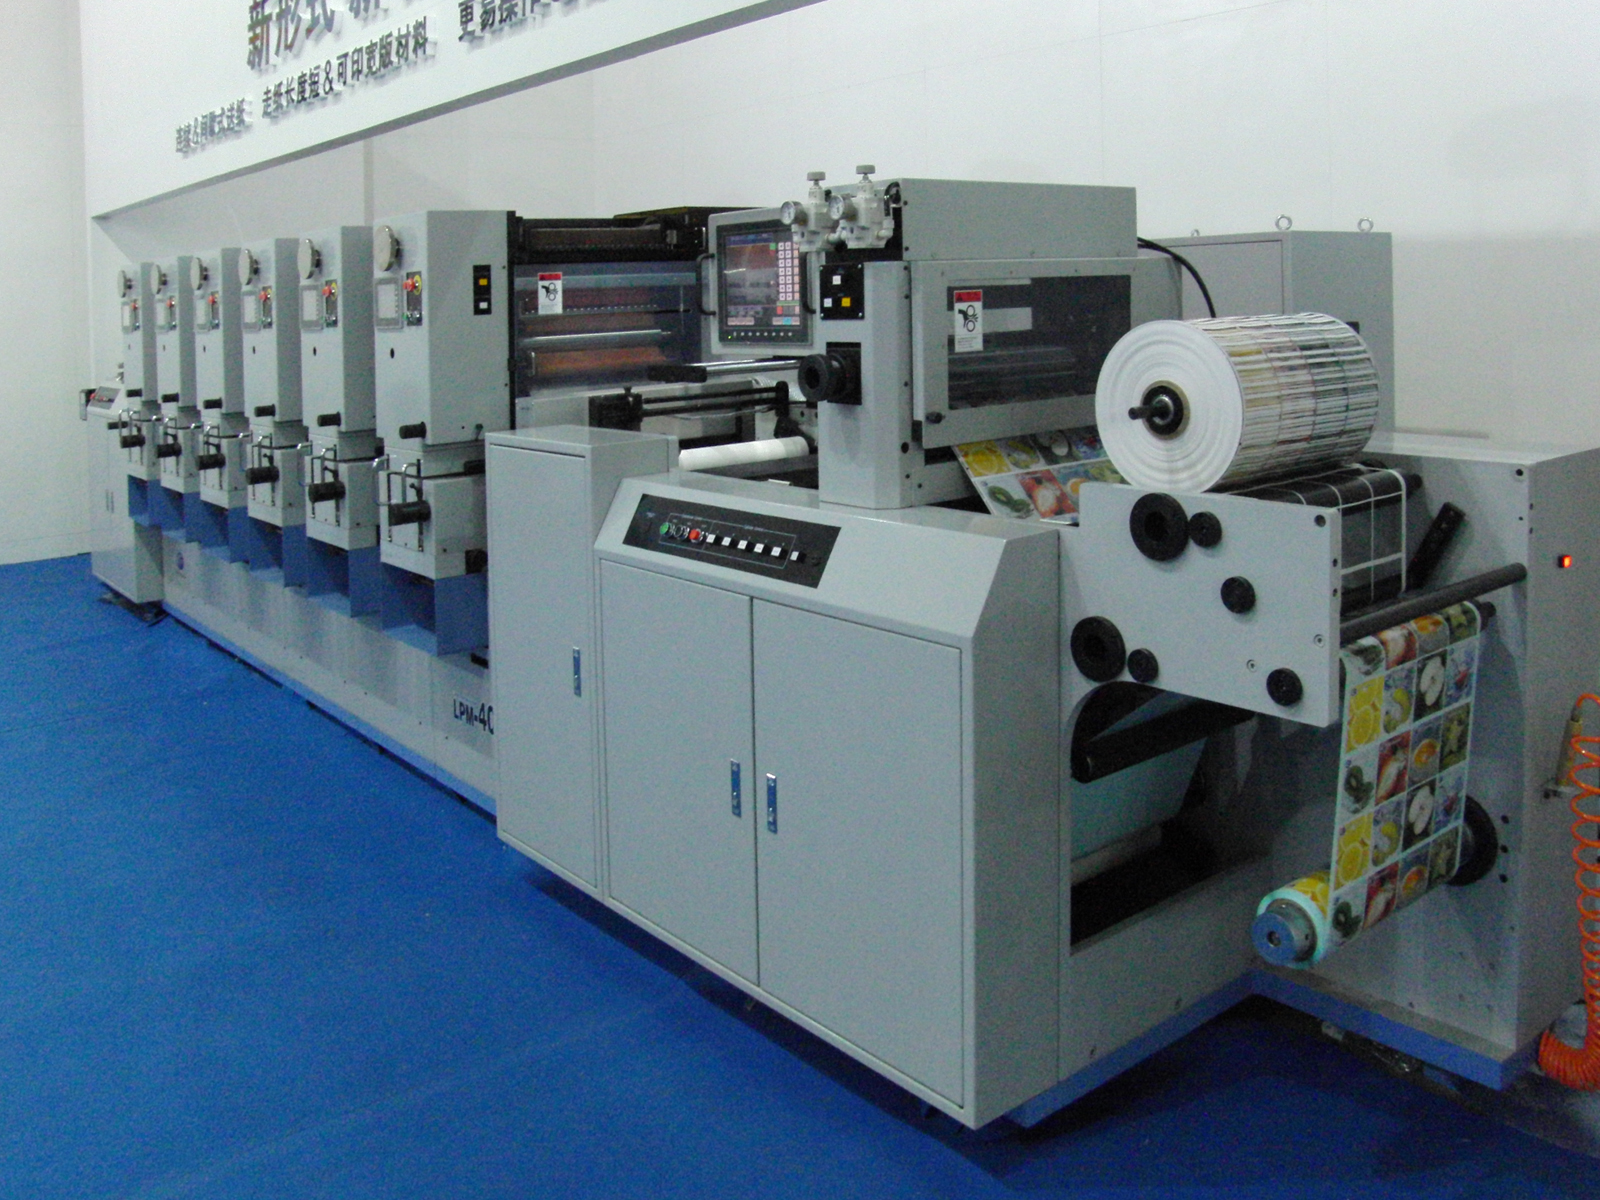 連続式給紙方式を採用した間欠輪転式ラベル印刷機の新機種を開発 リンテック株式会社のプレスリリース